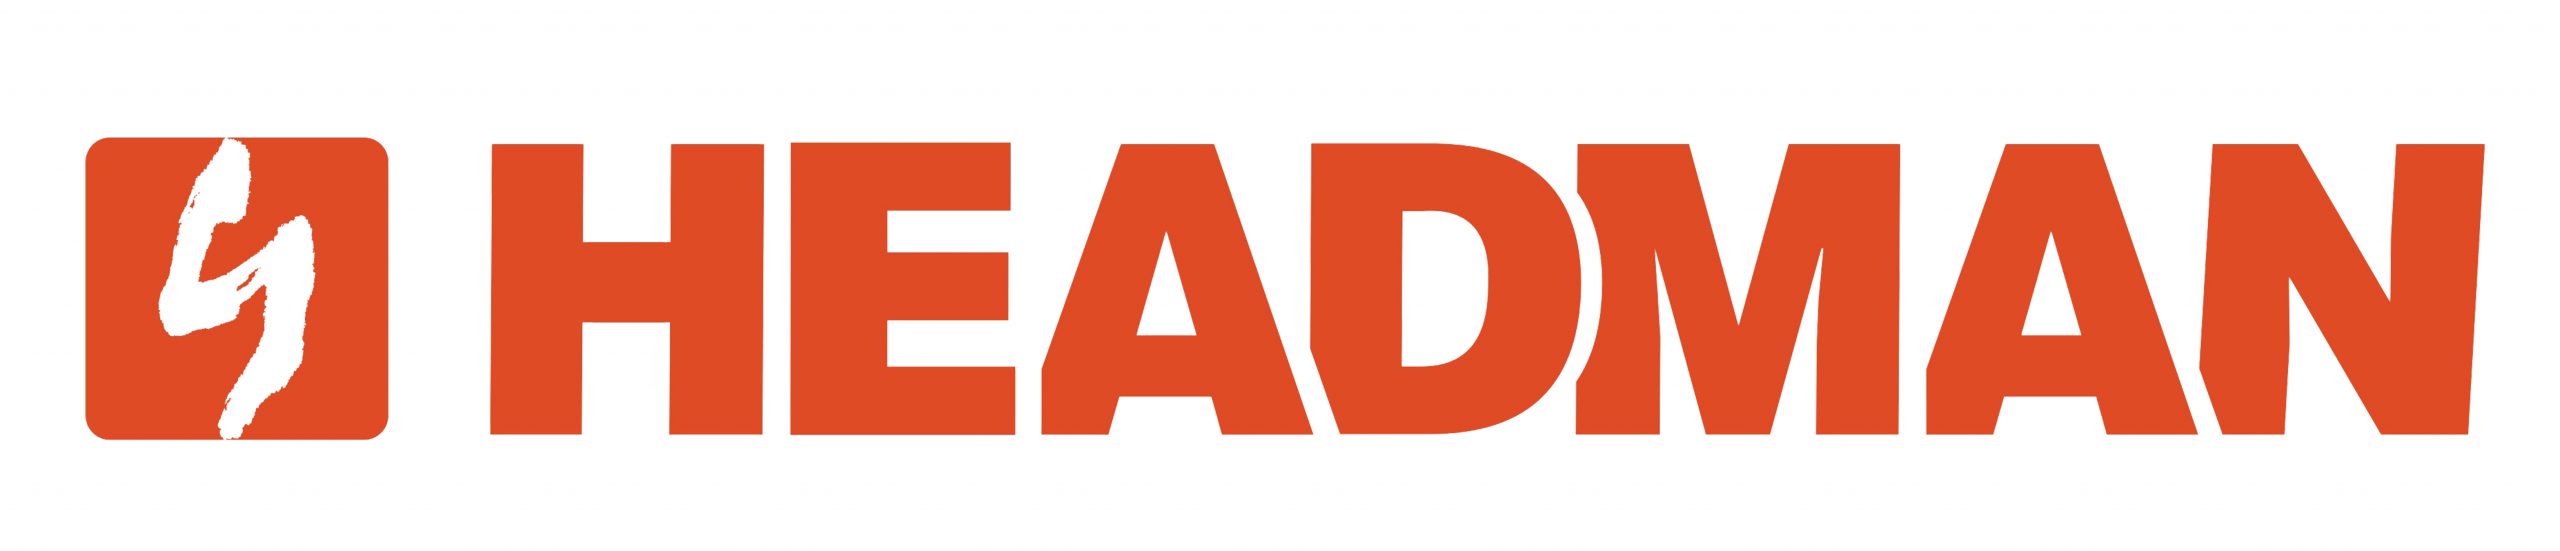 7 495 252. Headman станки. Headman logo. Headman станки логотип. Логотип инструмента Headman.